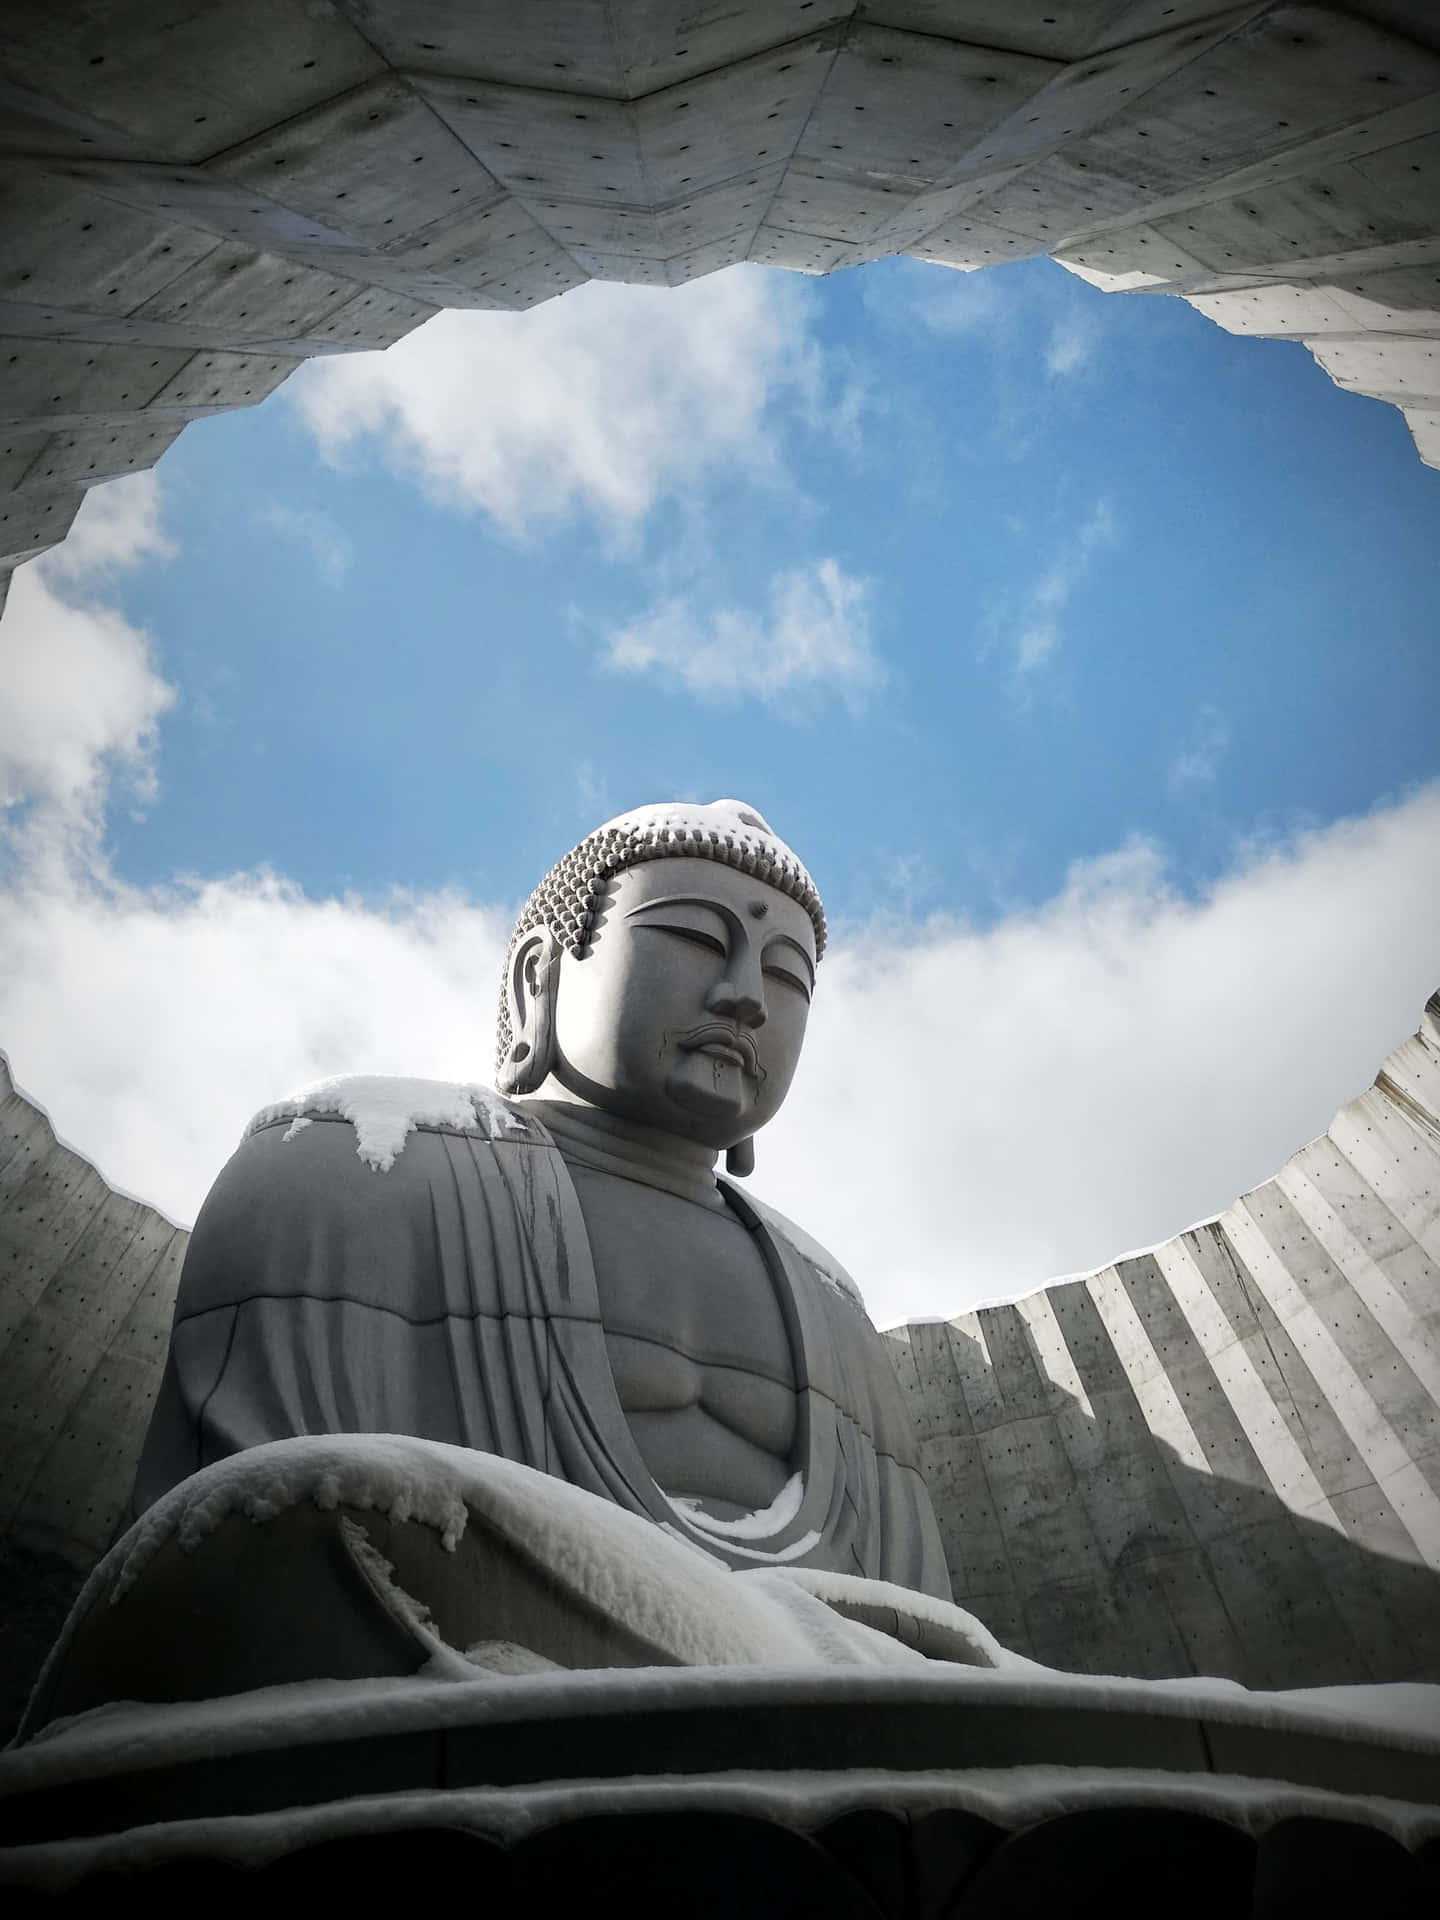 Imagende Una Colina En El Budismo